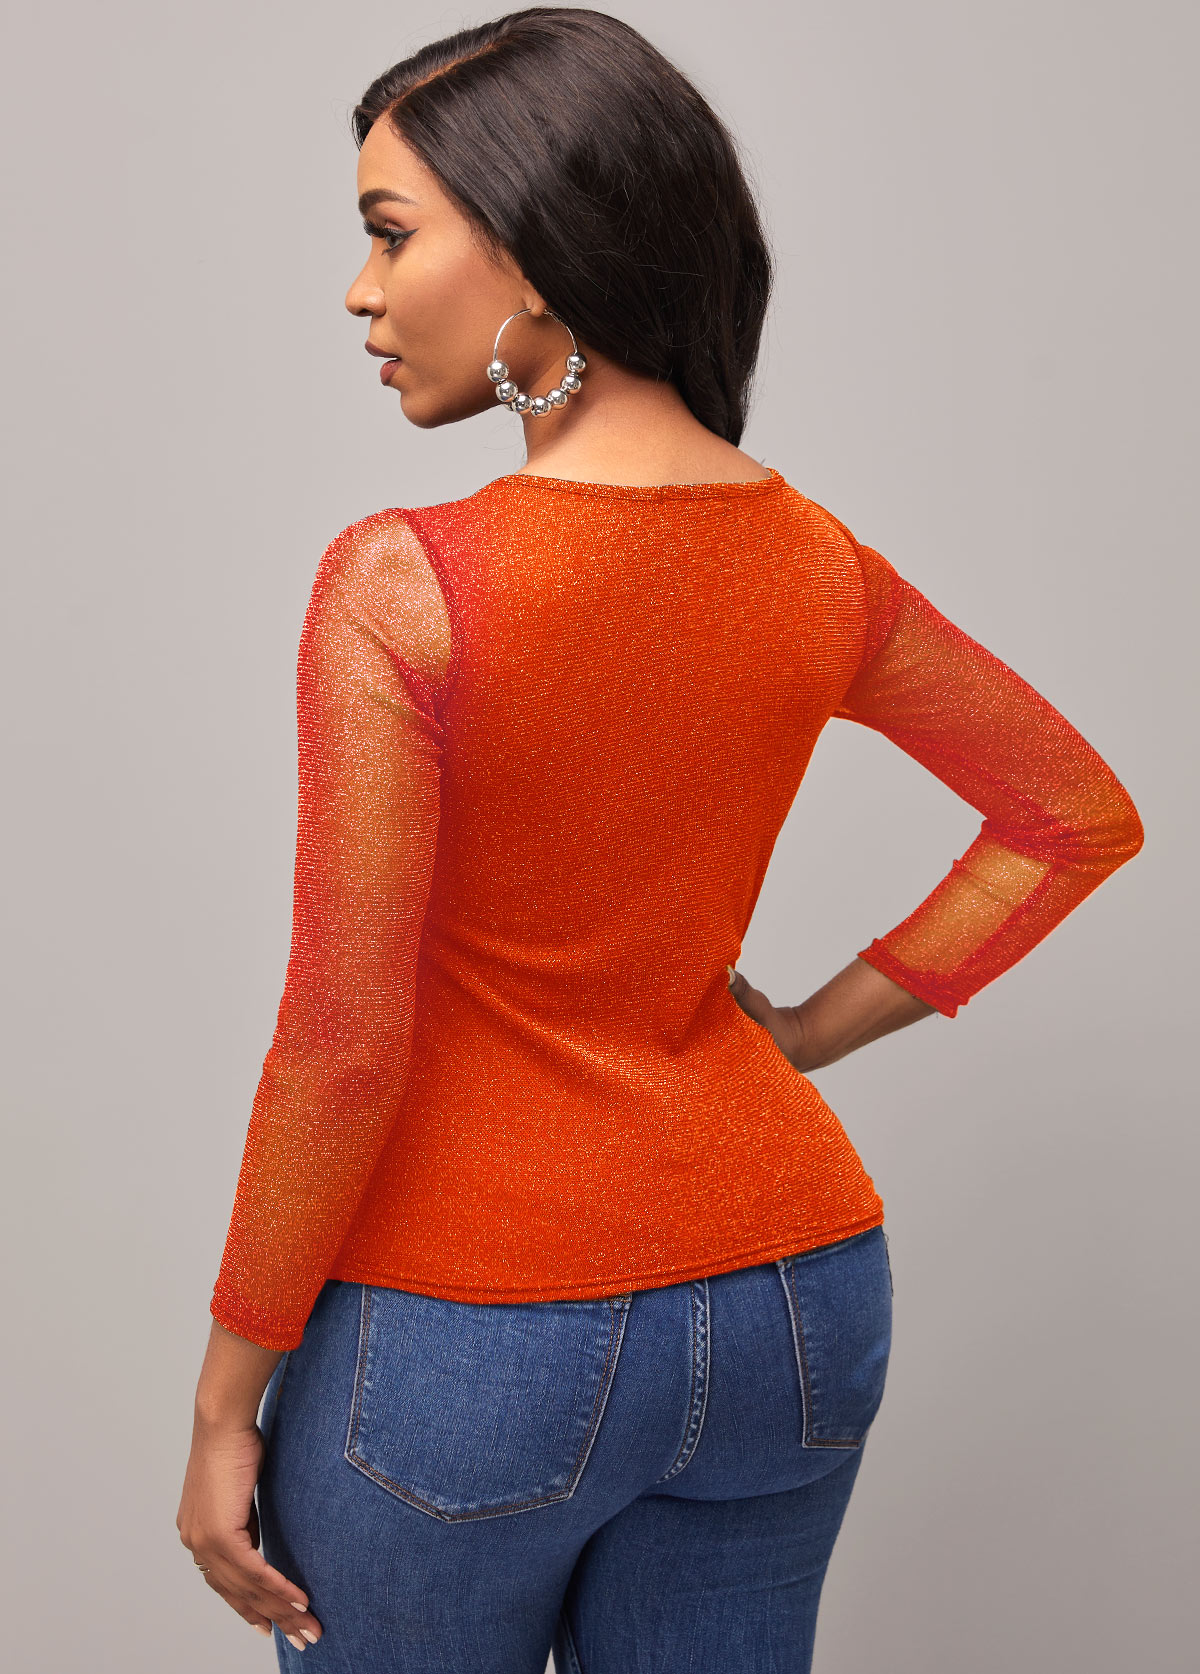 Mesh Stitching Orange Round Neck T Shirt